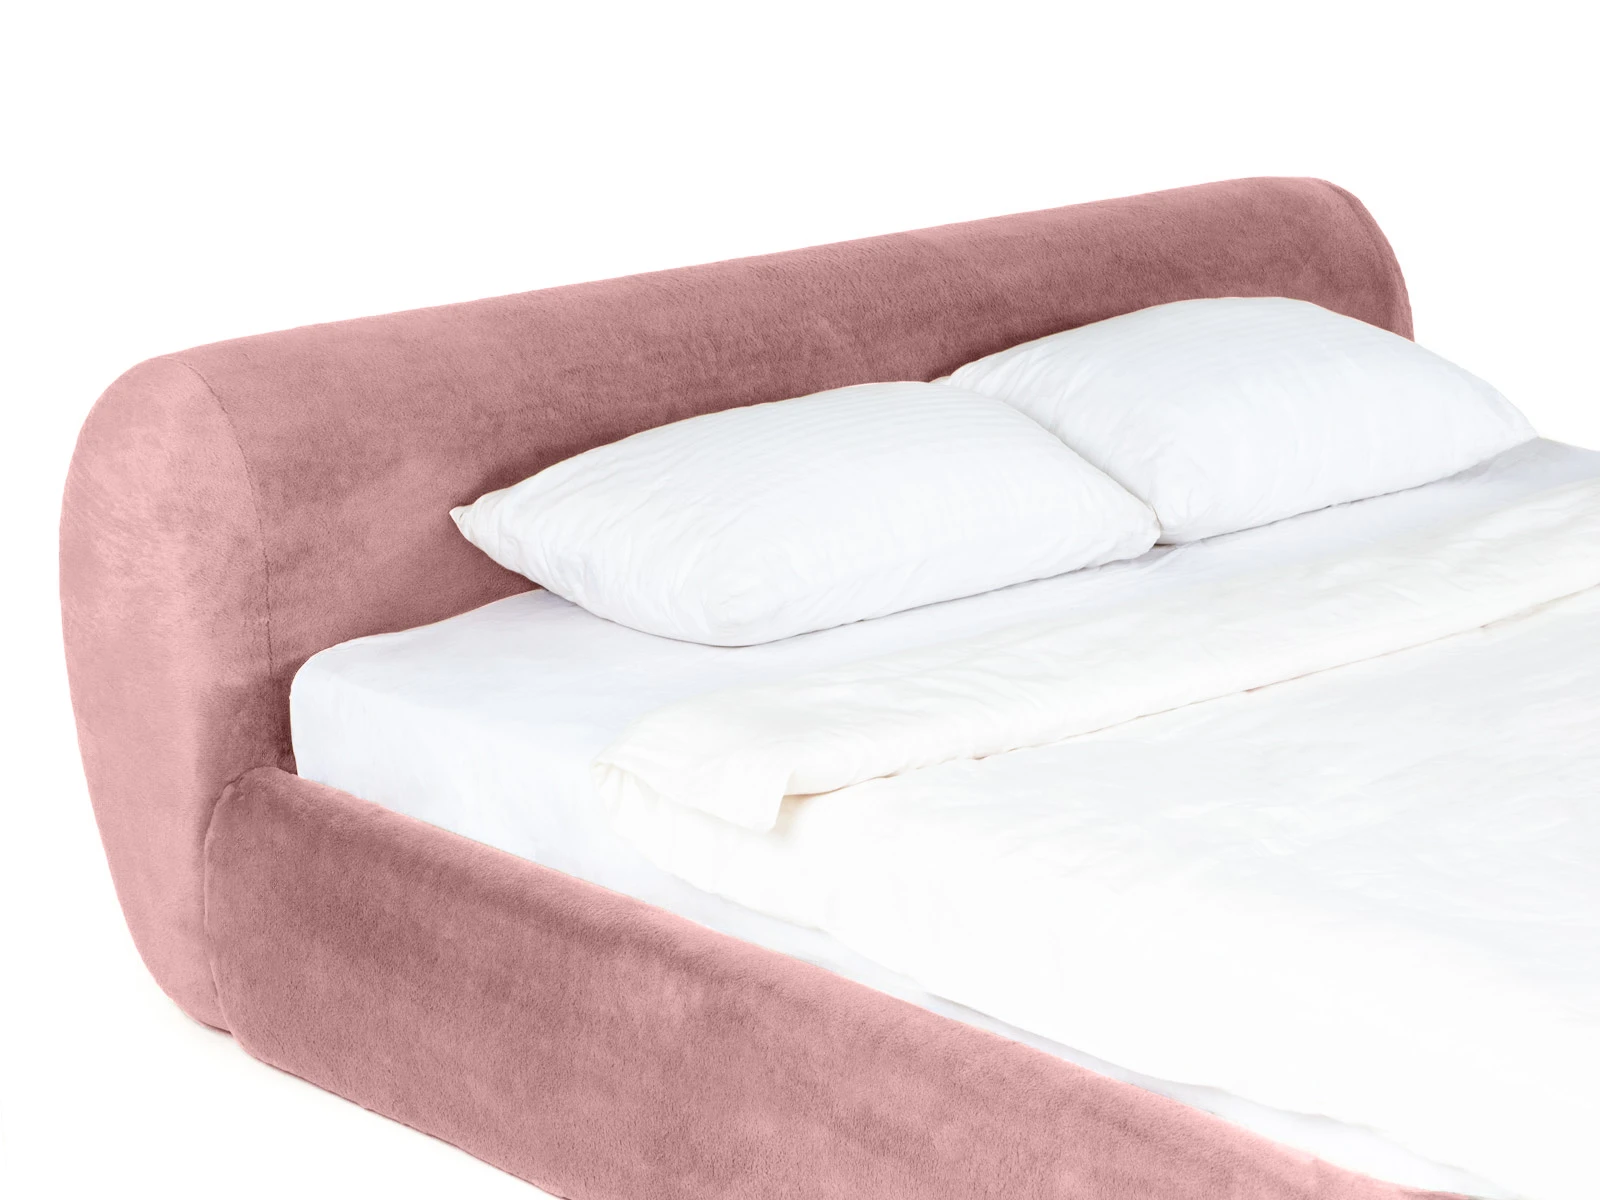 Кровать Sintra 180х200 розовый 888869